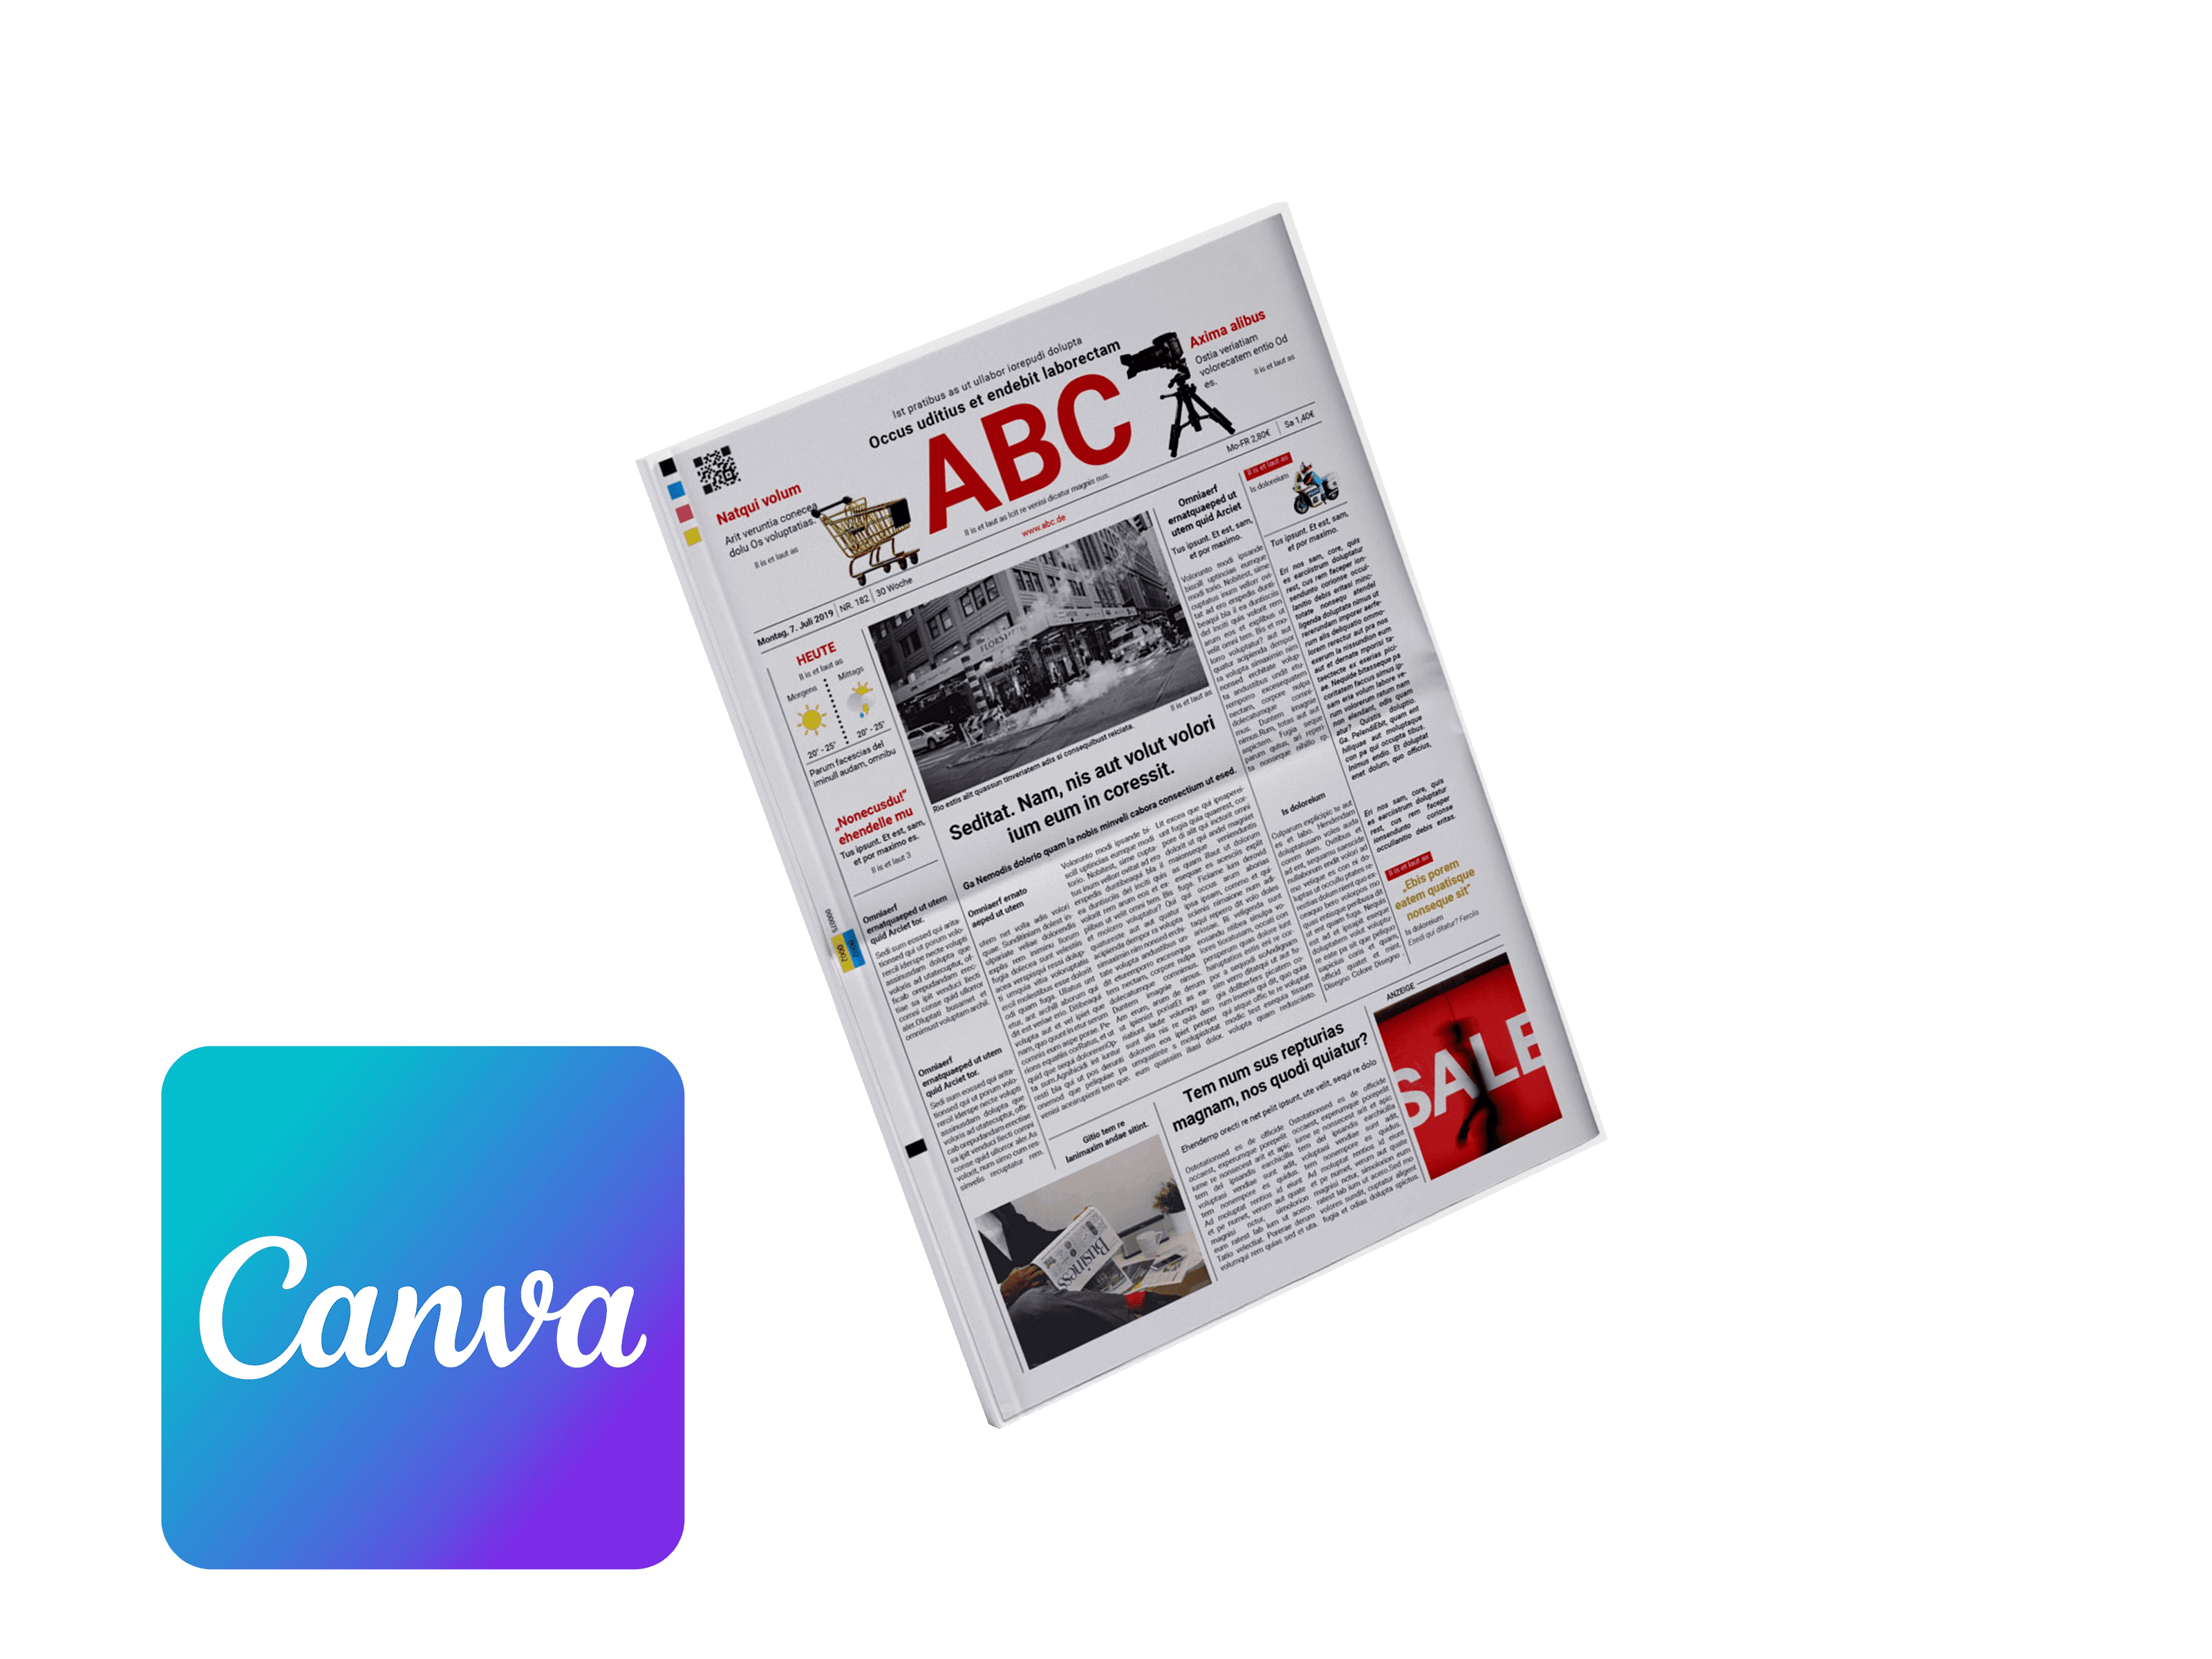 Tageszeitung online mit Canva gestalten